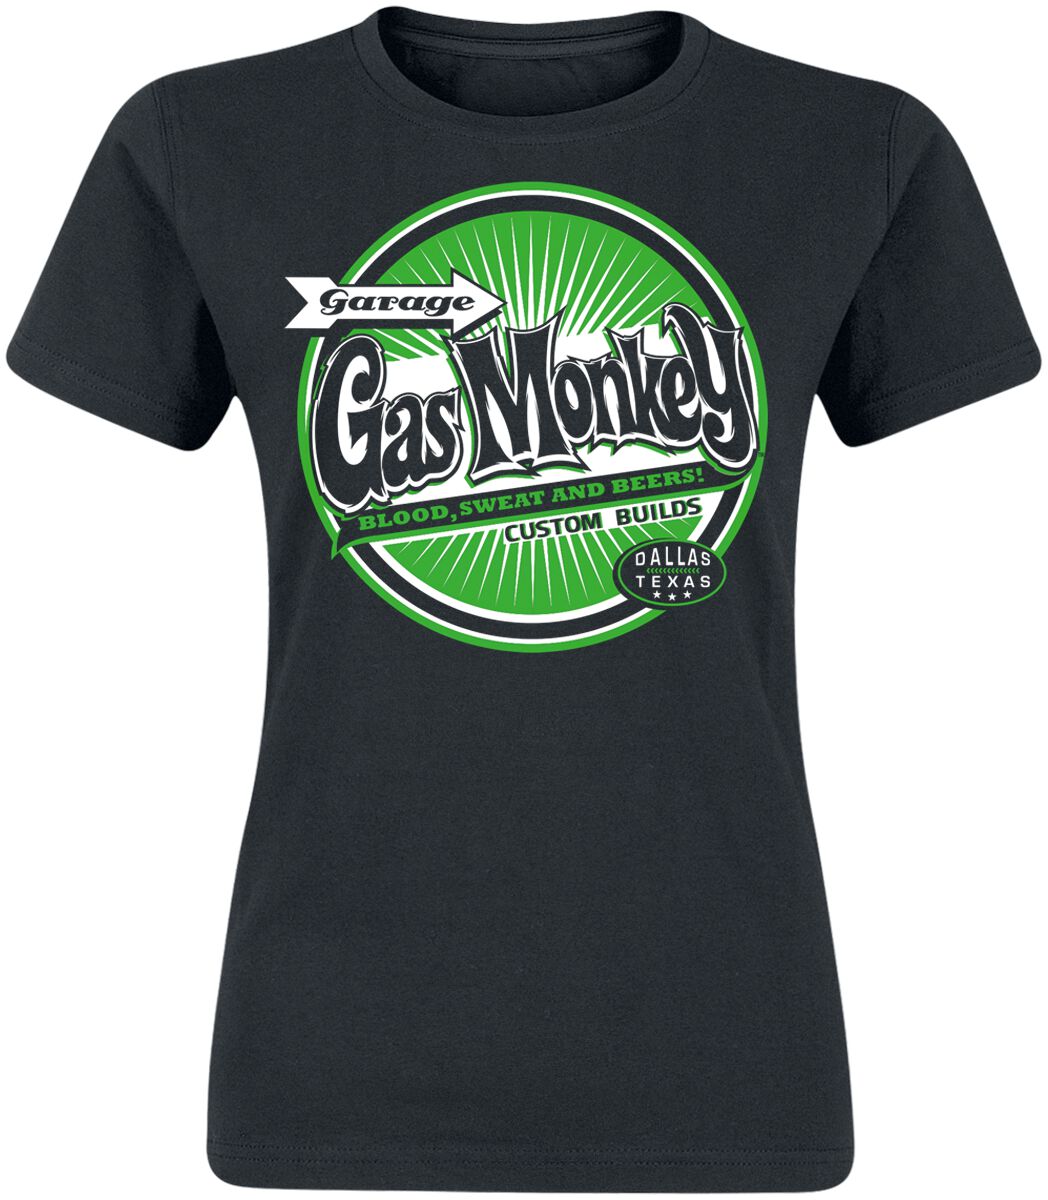 T-Shirt Manches courtes Rockabilly de Gas Monkey Garage - Green Bottle Top - S à XXL - pour Femme - 